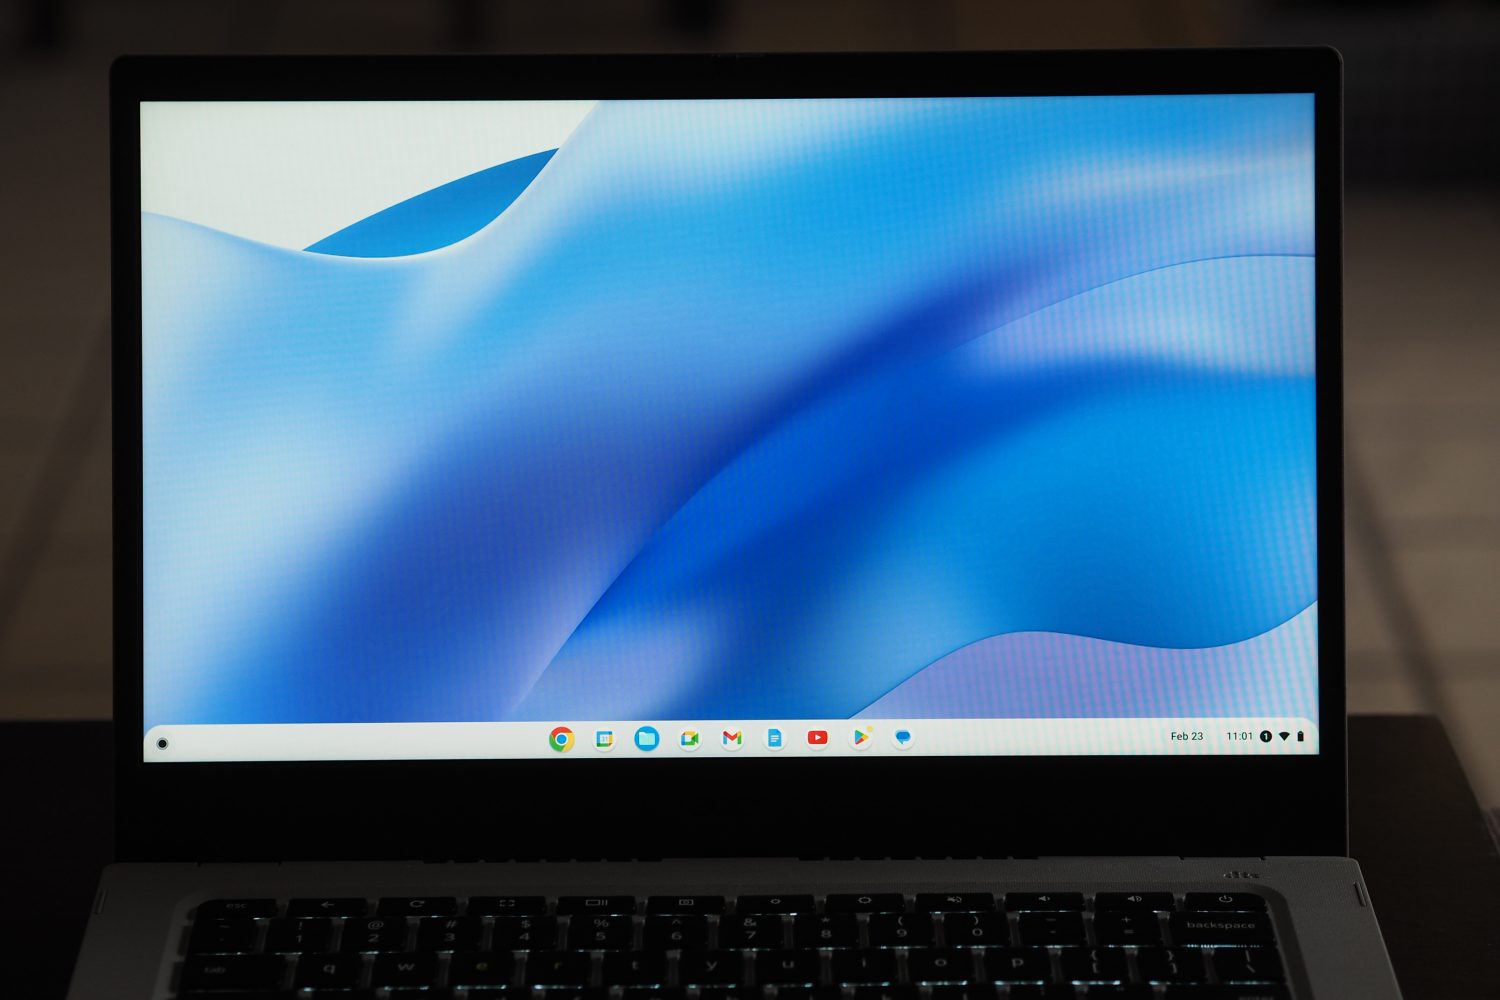 Vista frontal do Acer Chromebook Vero 514 mostrando a tela.